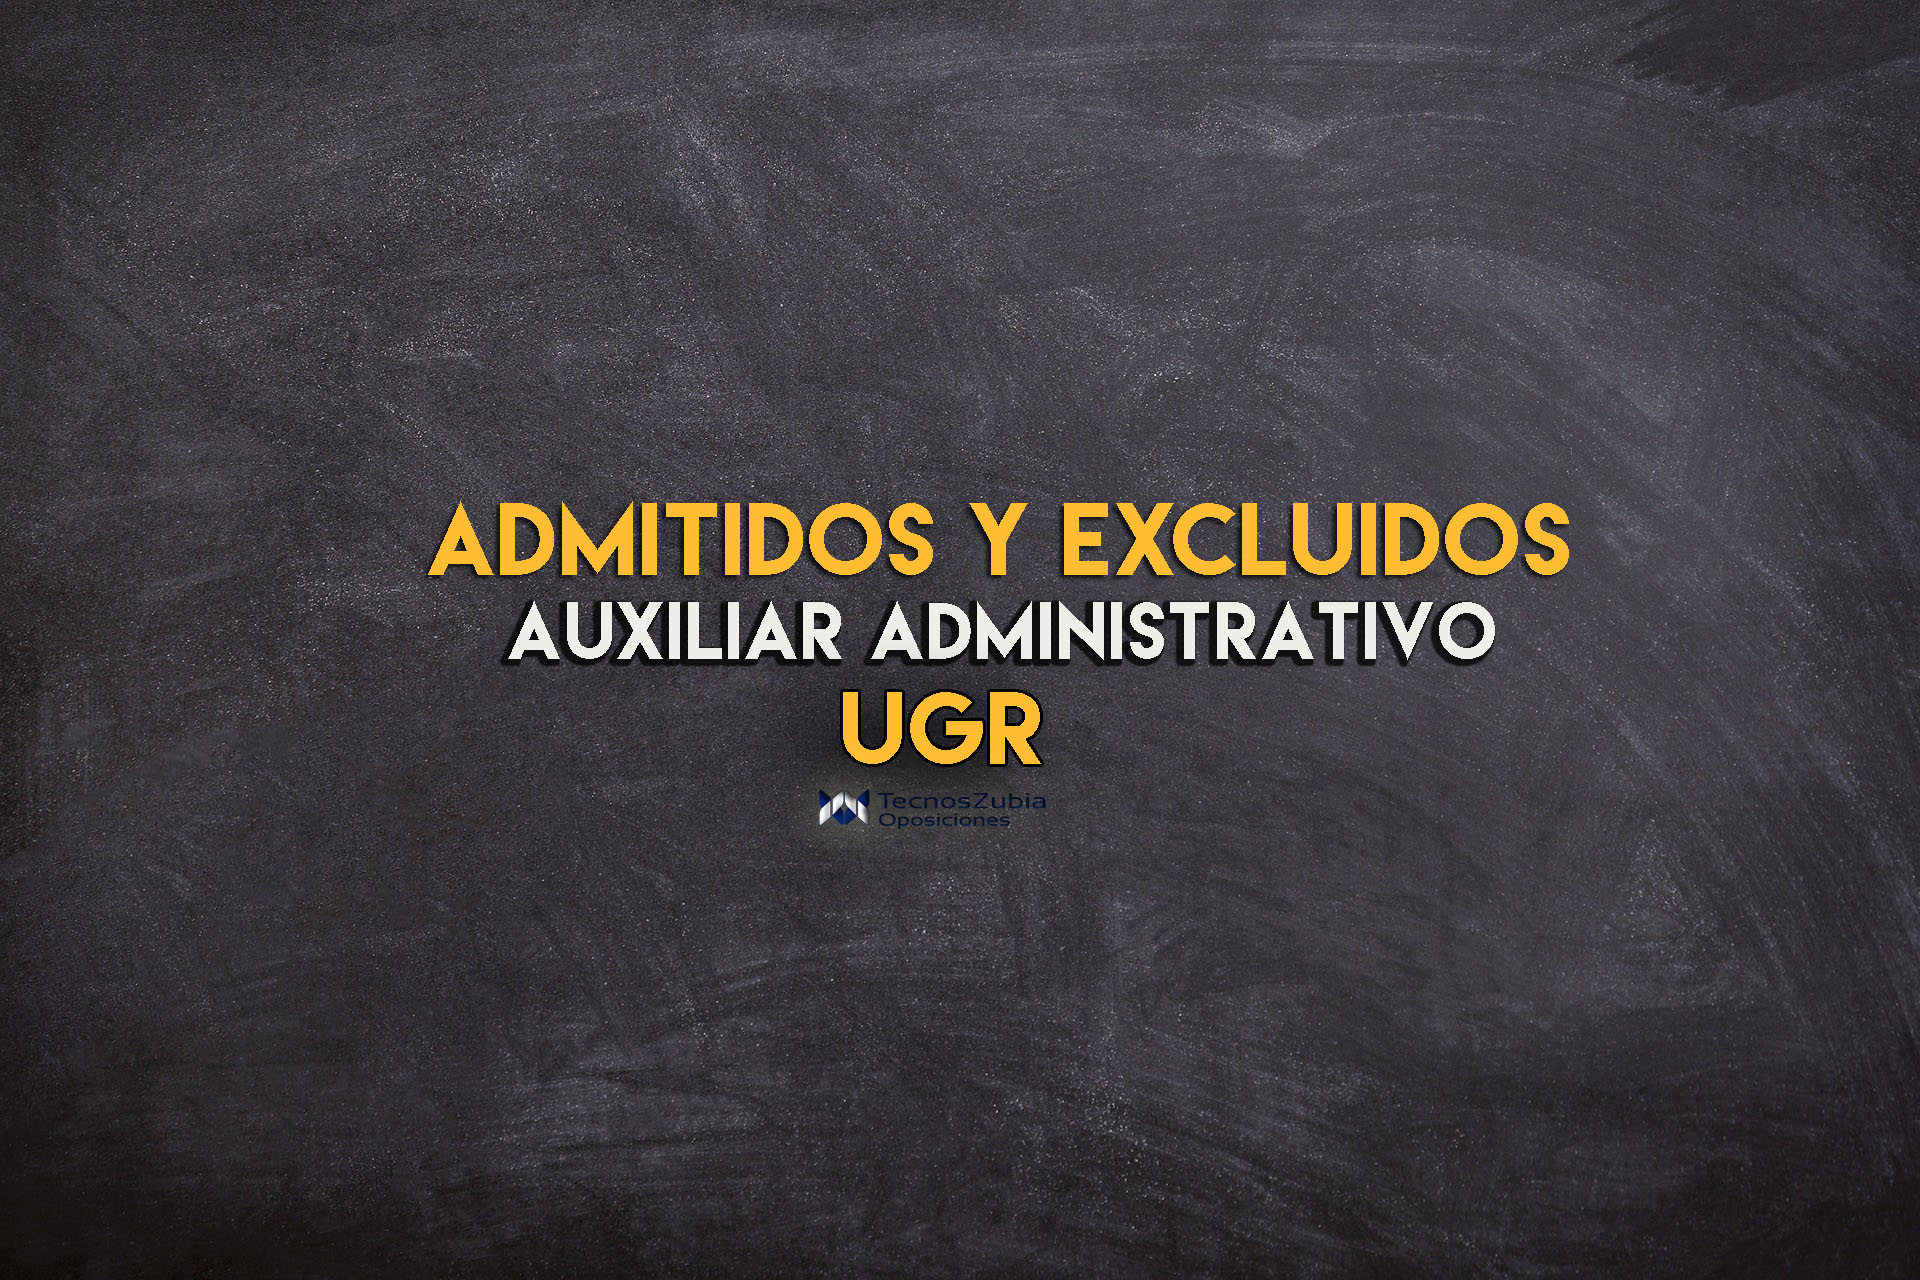 Admitidos y excluidos auxiliar administrativo UGR